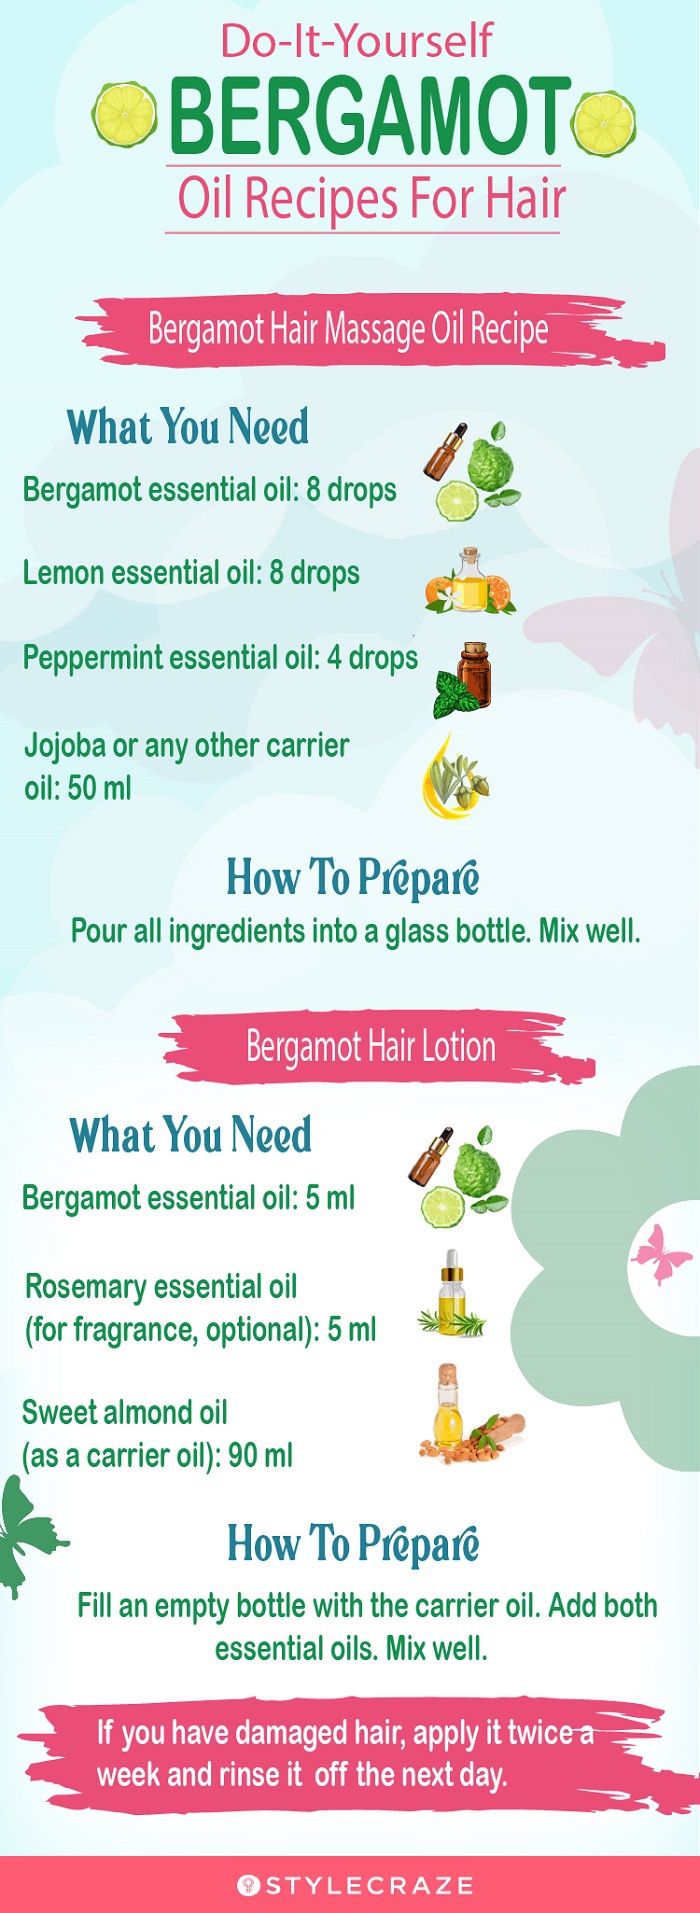 bergamot oil recipes for hair(infographic)